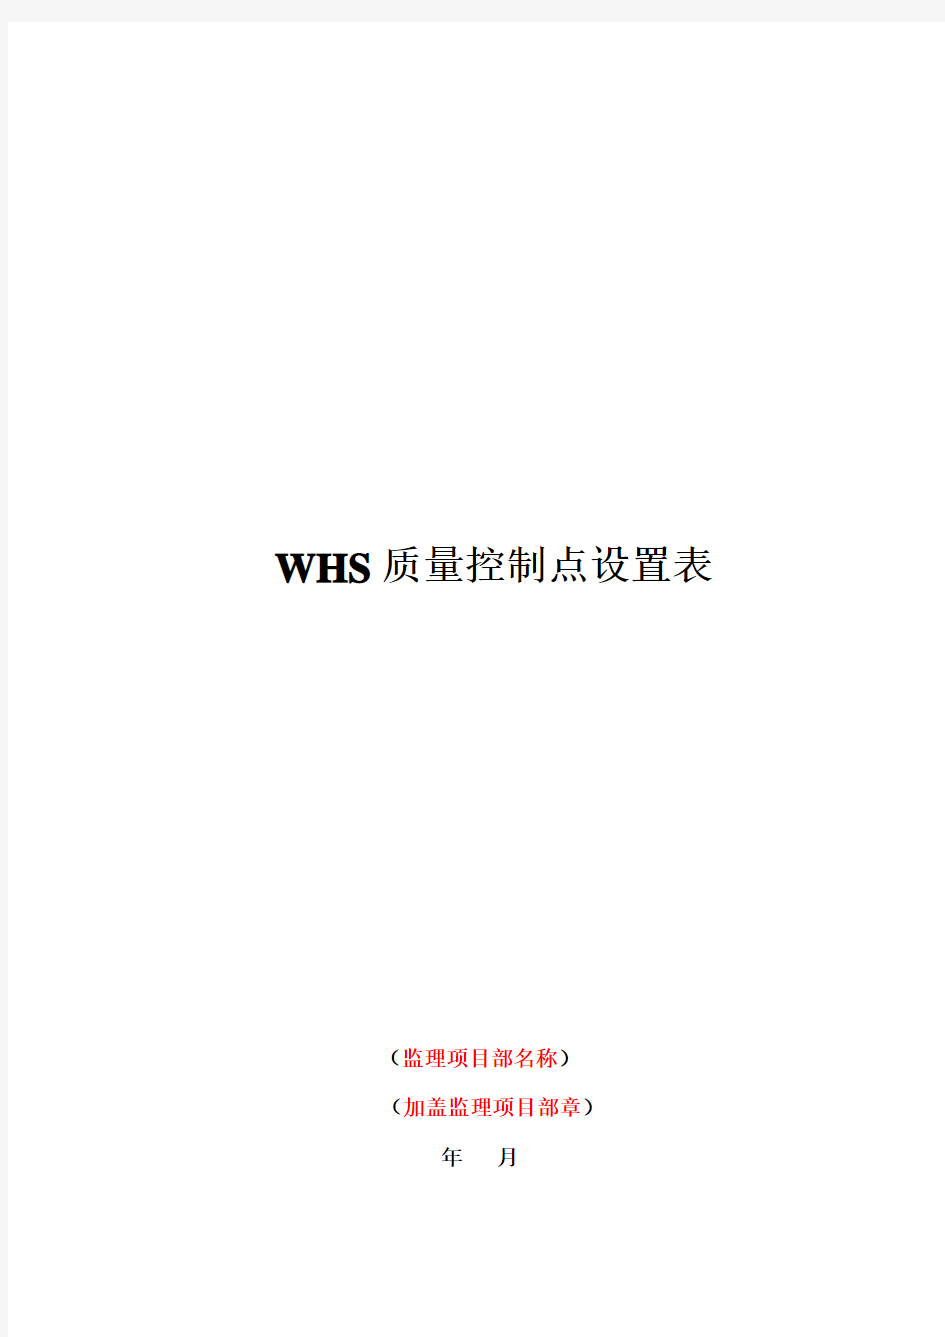 监理文件封面及大纲(WHS质量控制点设置表)